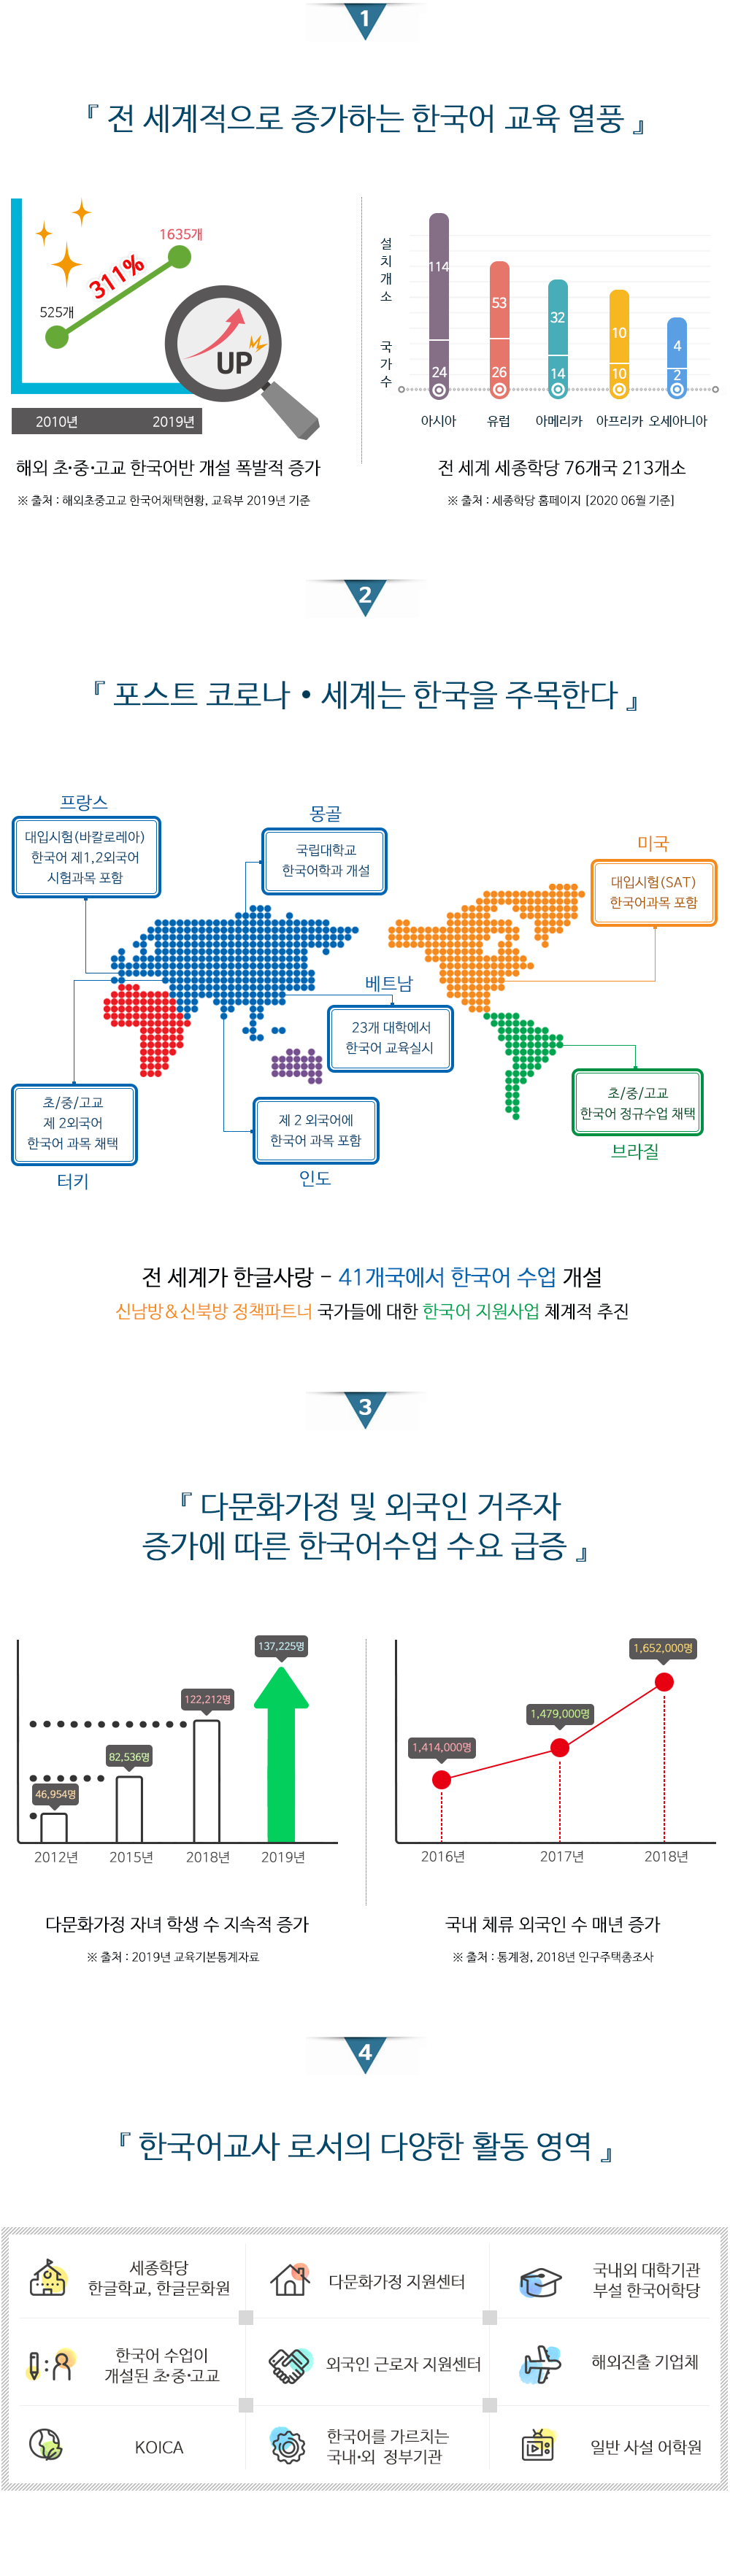 전 세계적으로 증가하는 한국어 교육 열풍/포스트 코로나. 세계는 한국을 주목한다/다문화가정 및 외국인 거주자 증가에 따른 한국어수업 수요 급증/한국어교사로서의 다양한 활동 영역